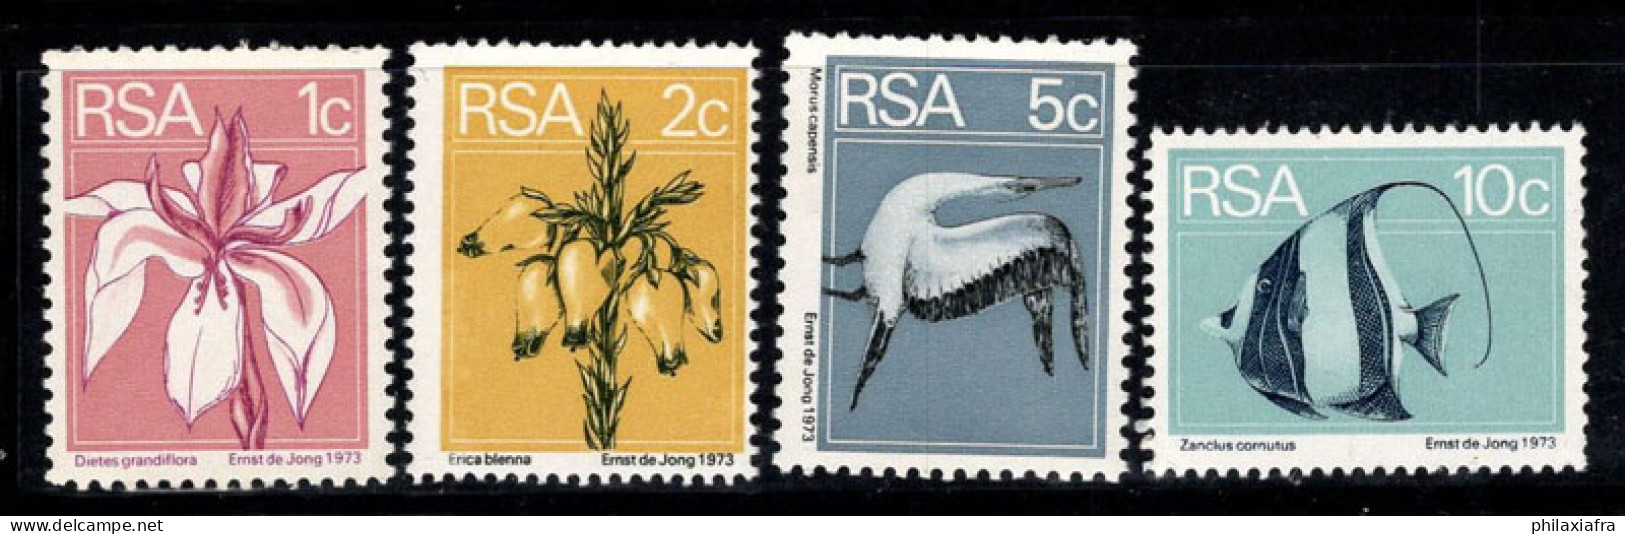 Afrique Du Sud 1974 Mi. 463A-466A Neuf ** 100% Flore Et Faune, Poissons, Fleurs - Ungebraucht